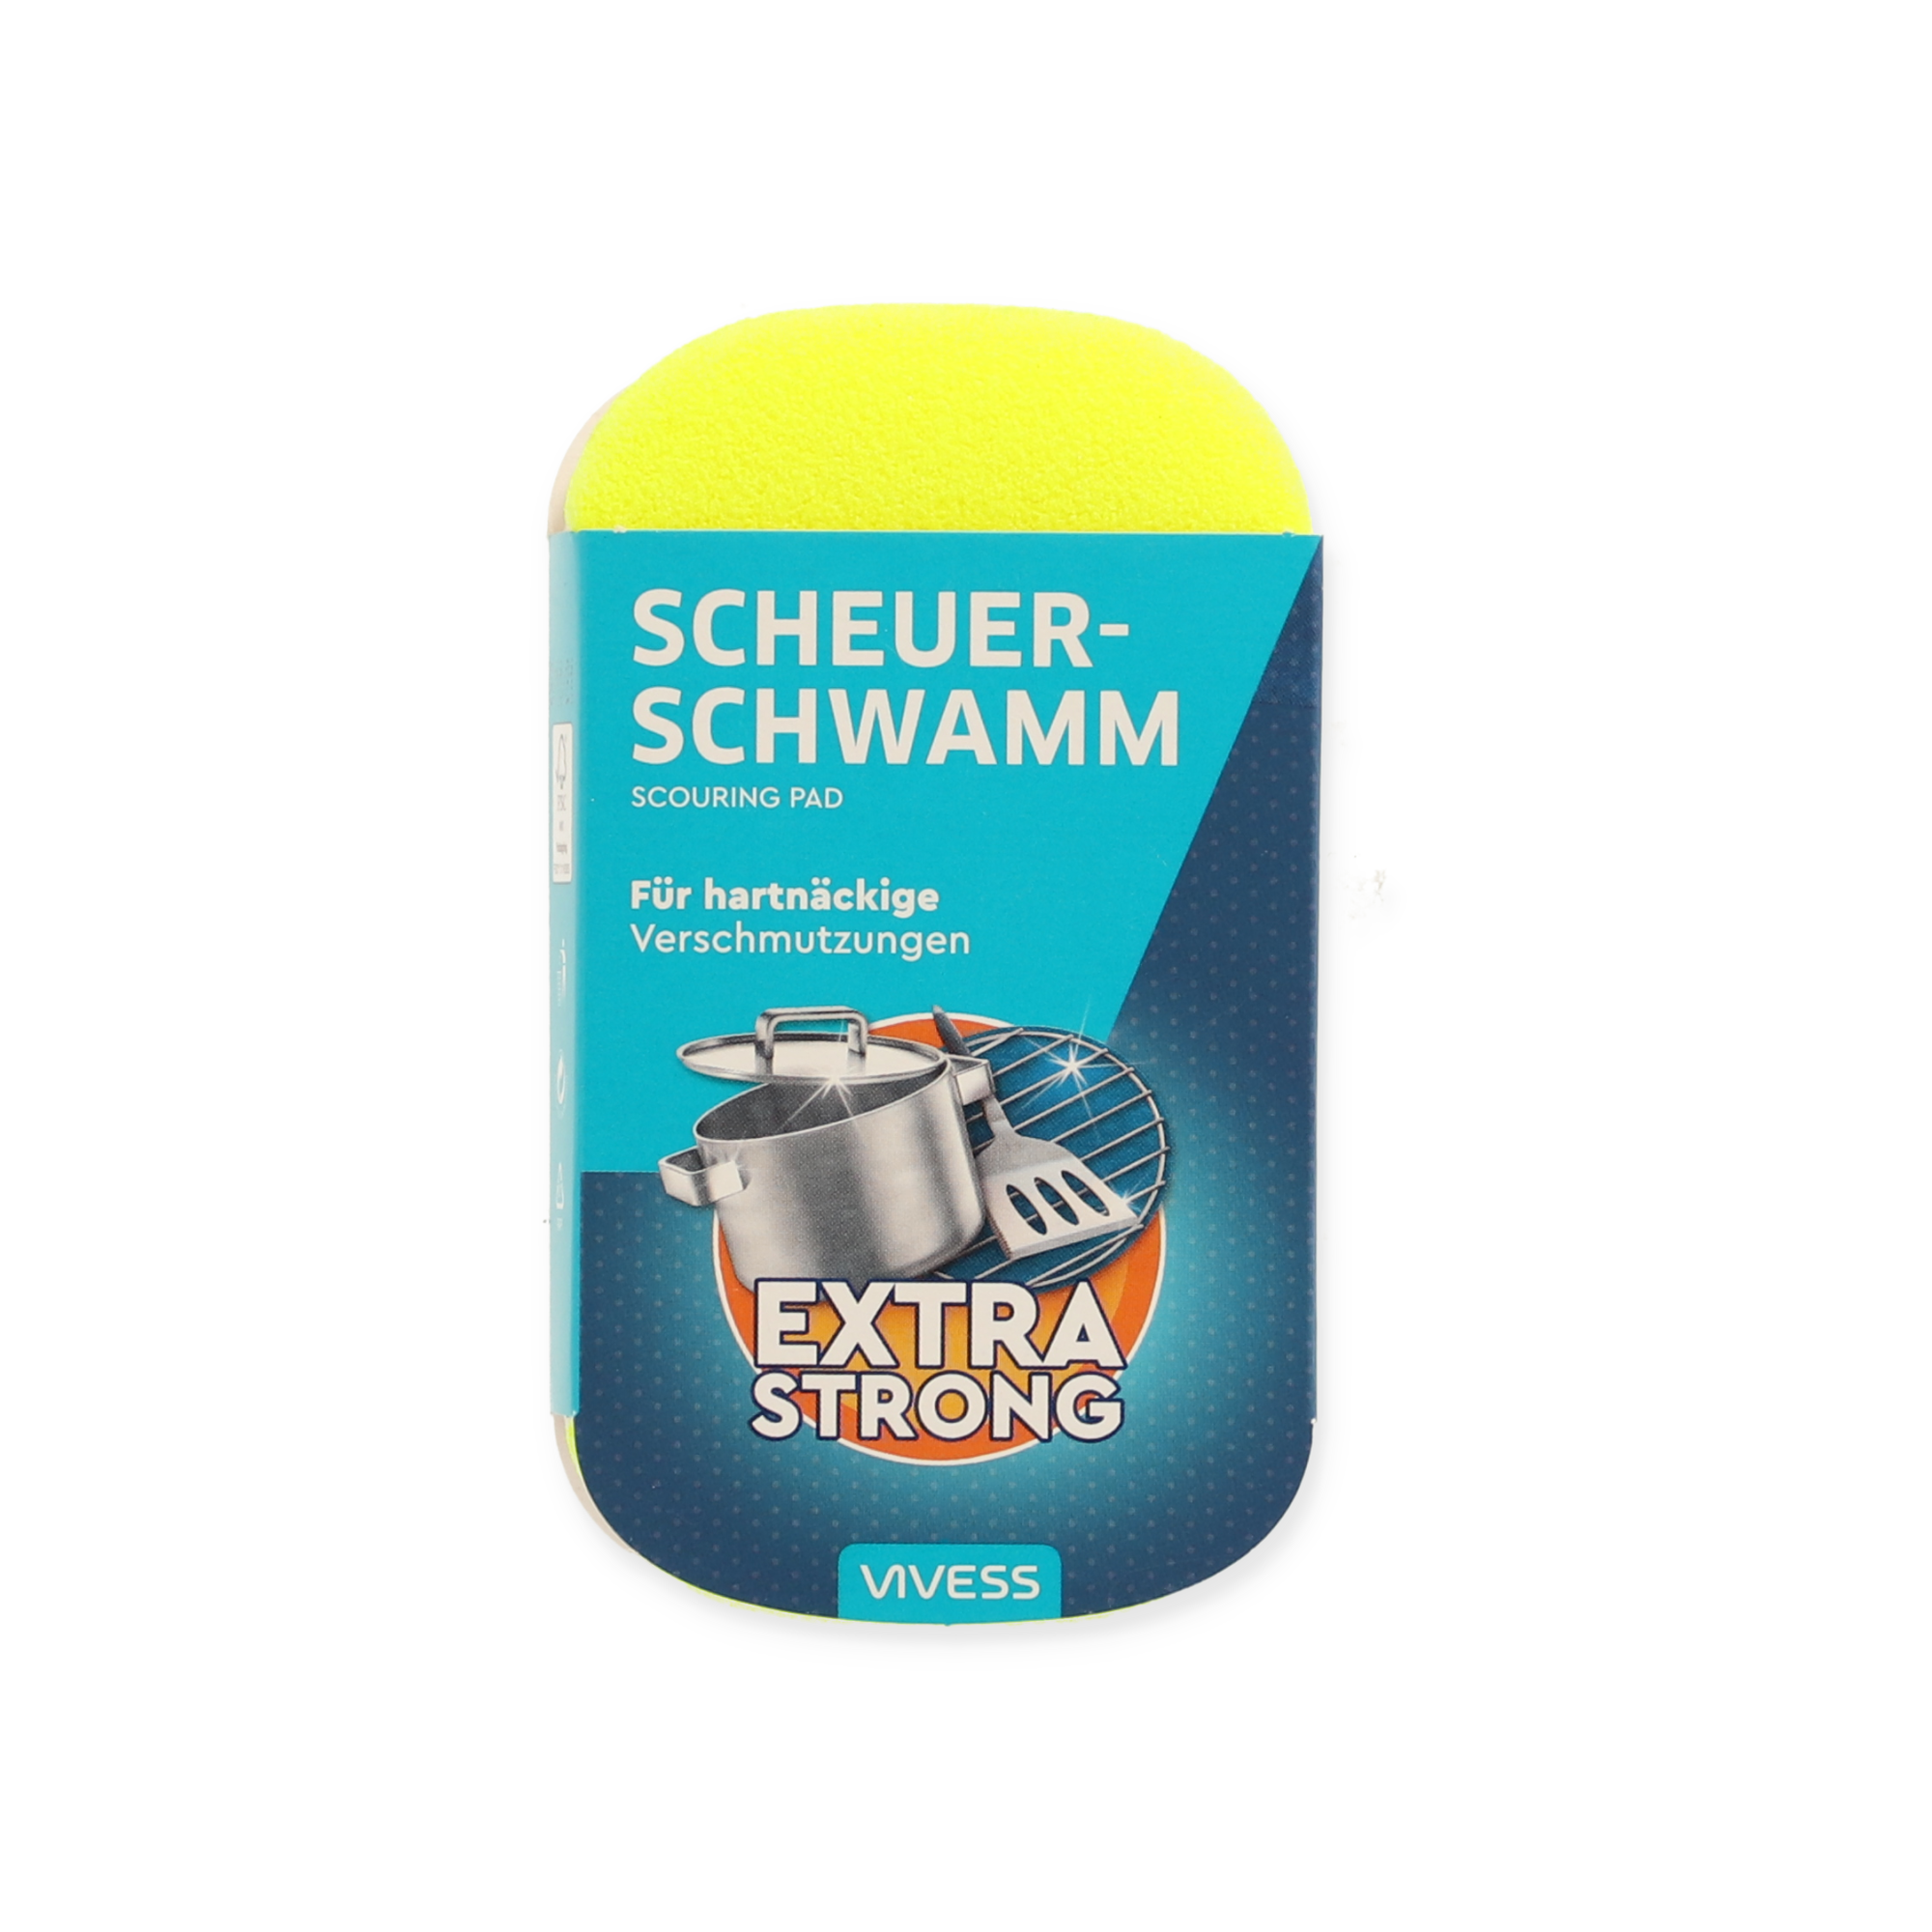 Scheuerschwamm 'Extra Strong' bunt sortiert + product picture